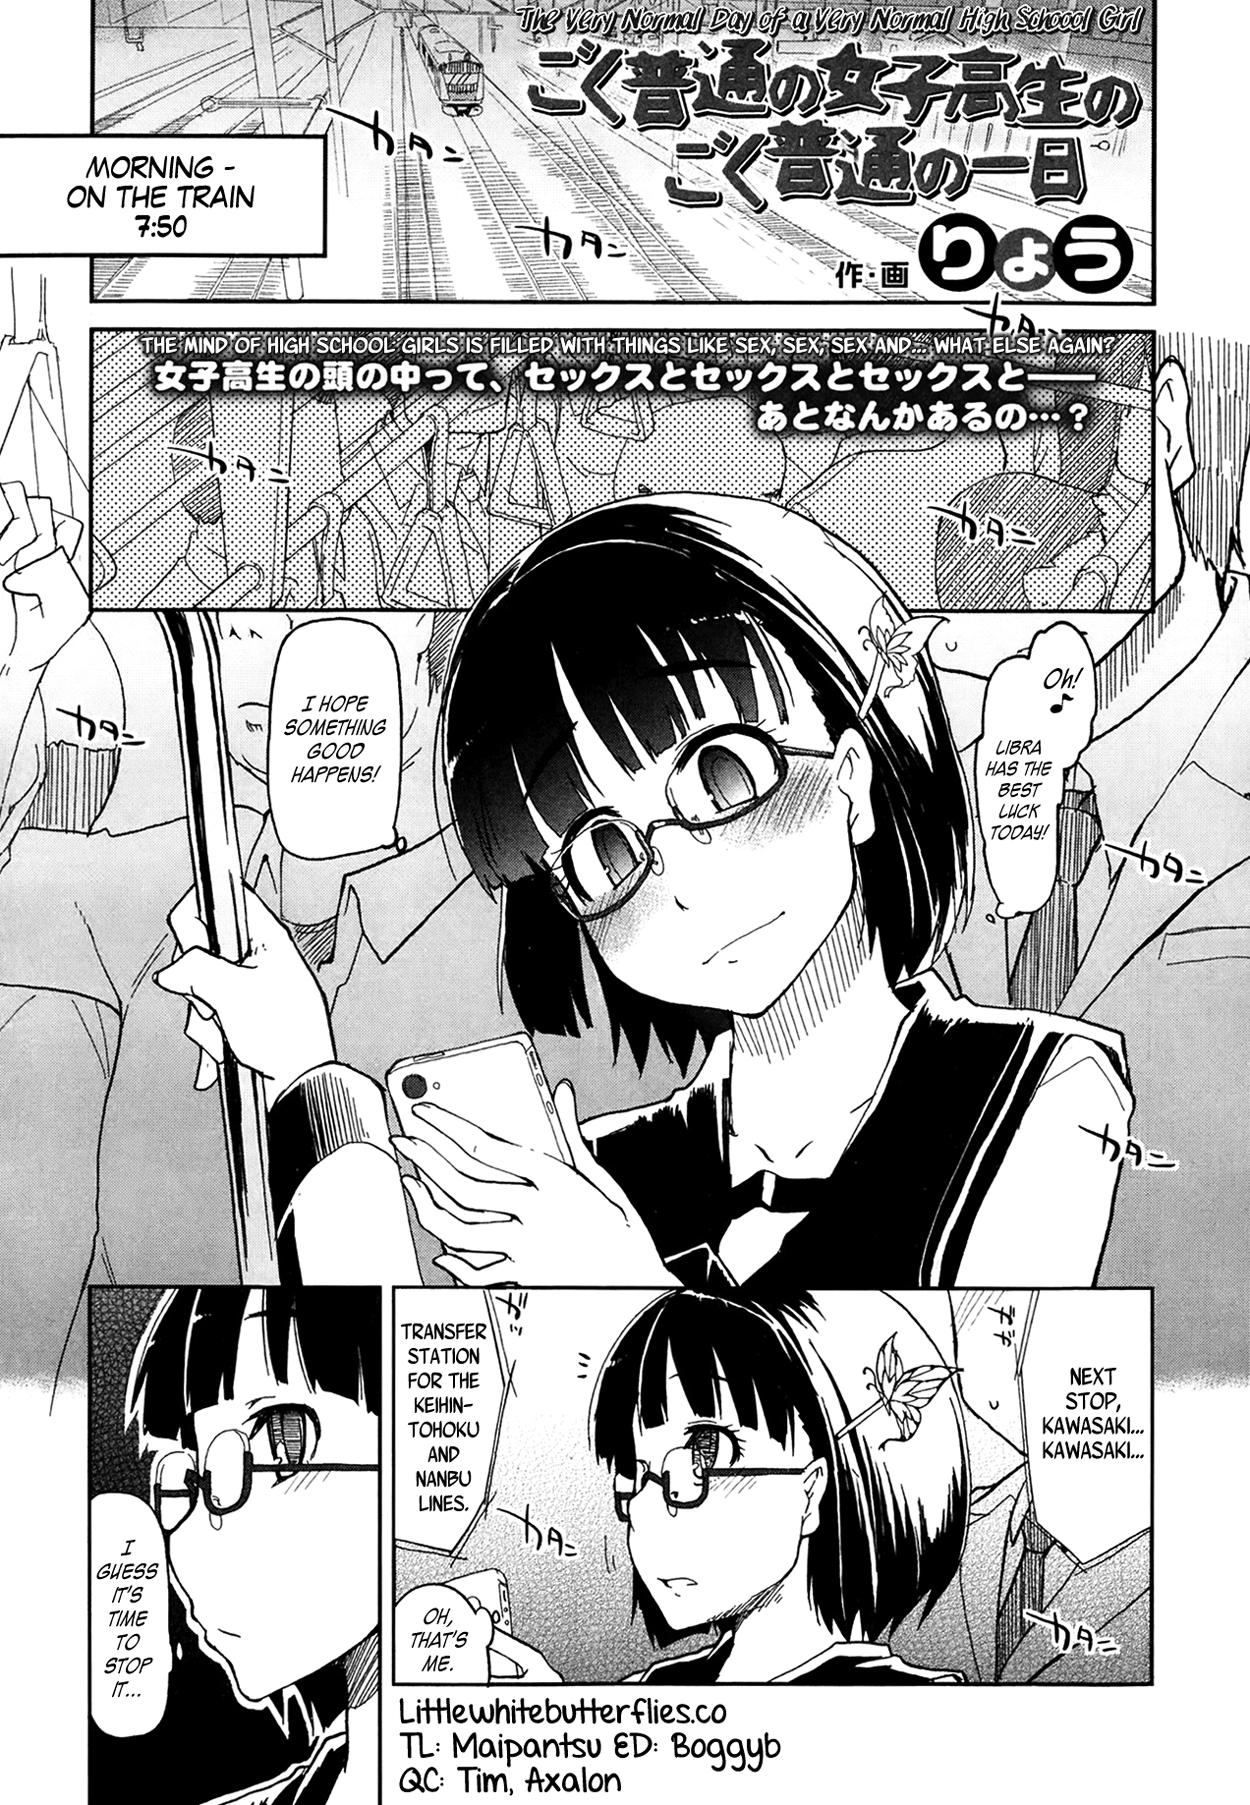 Flashing Goku Futsuu no Joshikousei no Goku Futsuu no Ichinichi | The Very Normal Day of a Very Normal High School Girl Kitchen - Page 1